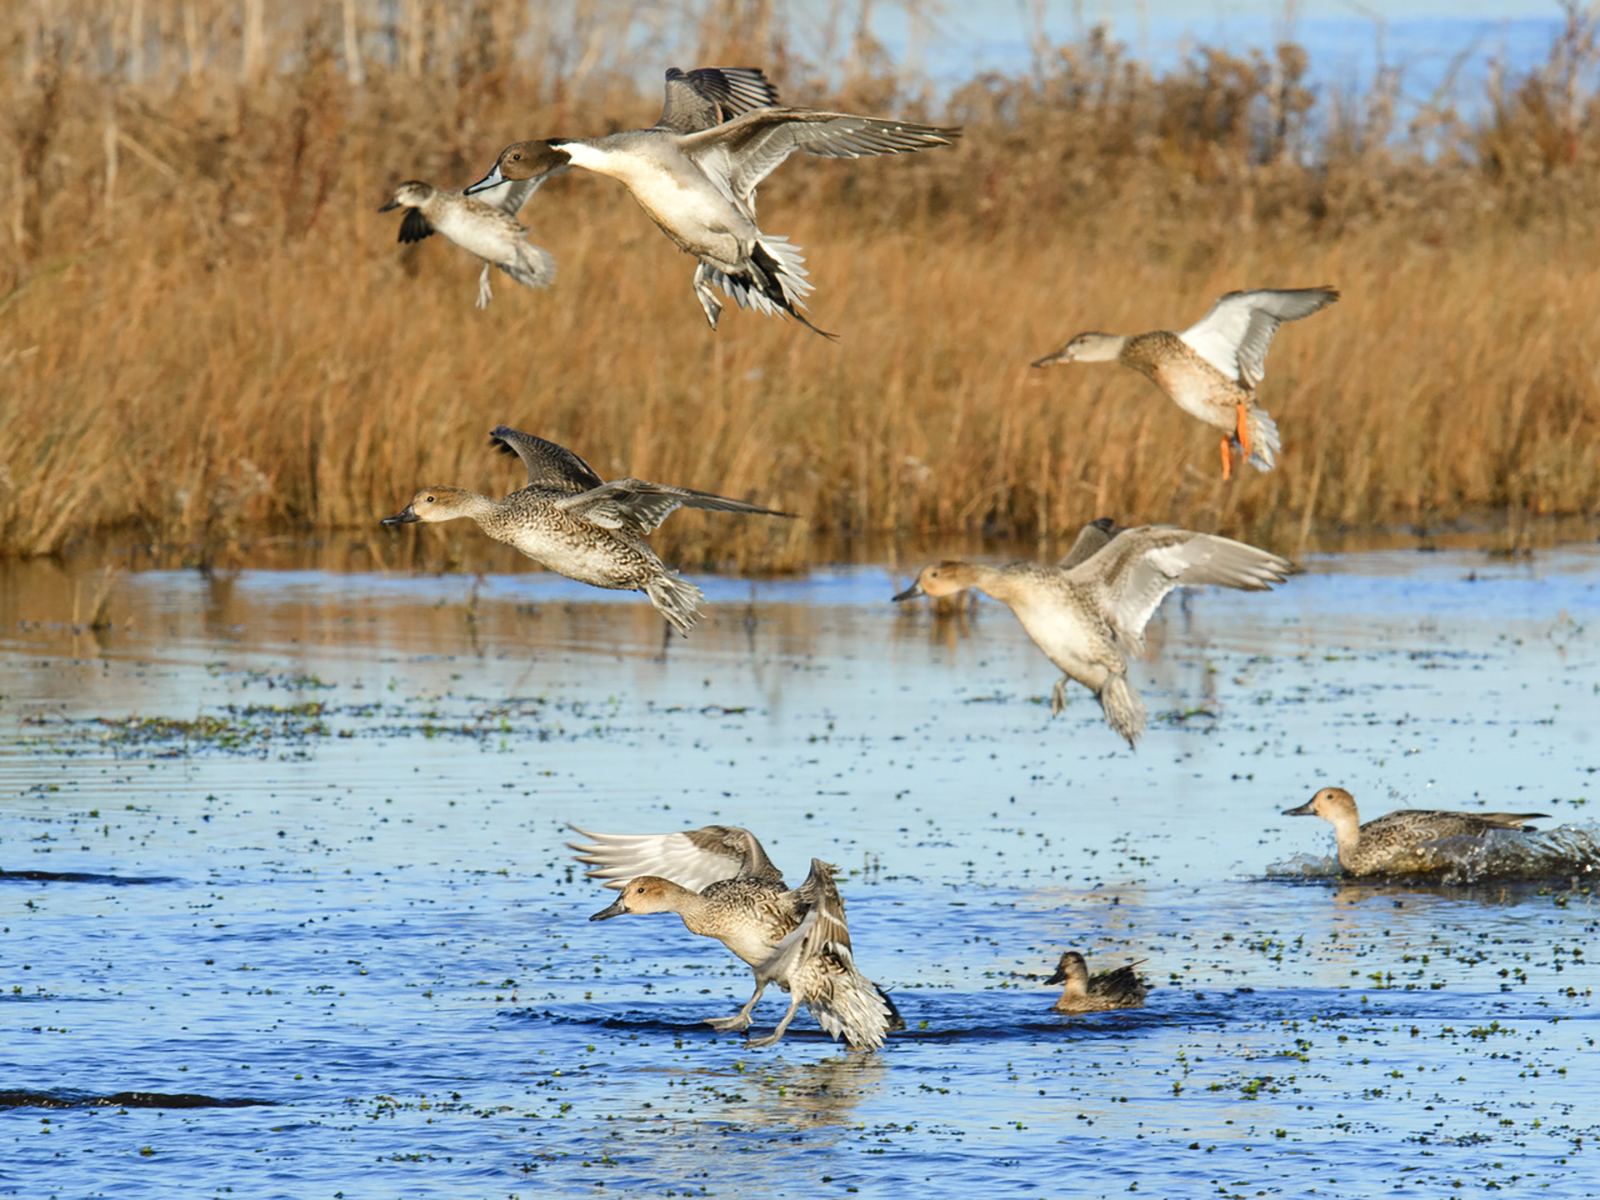 Waterfowl taking flight in a wetland